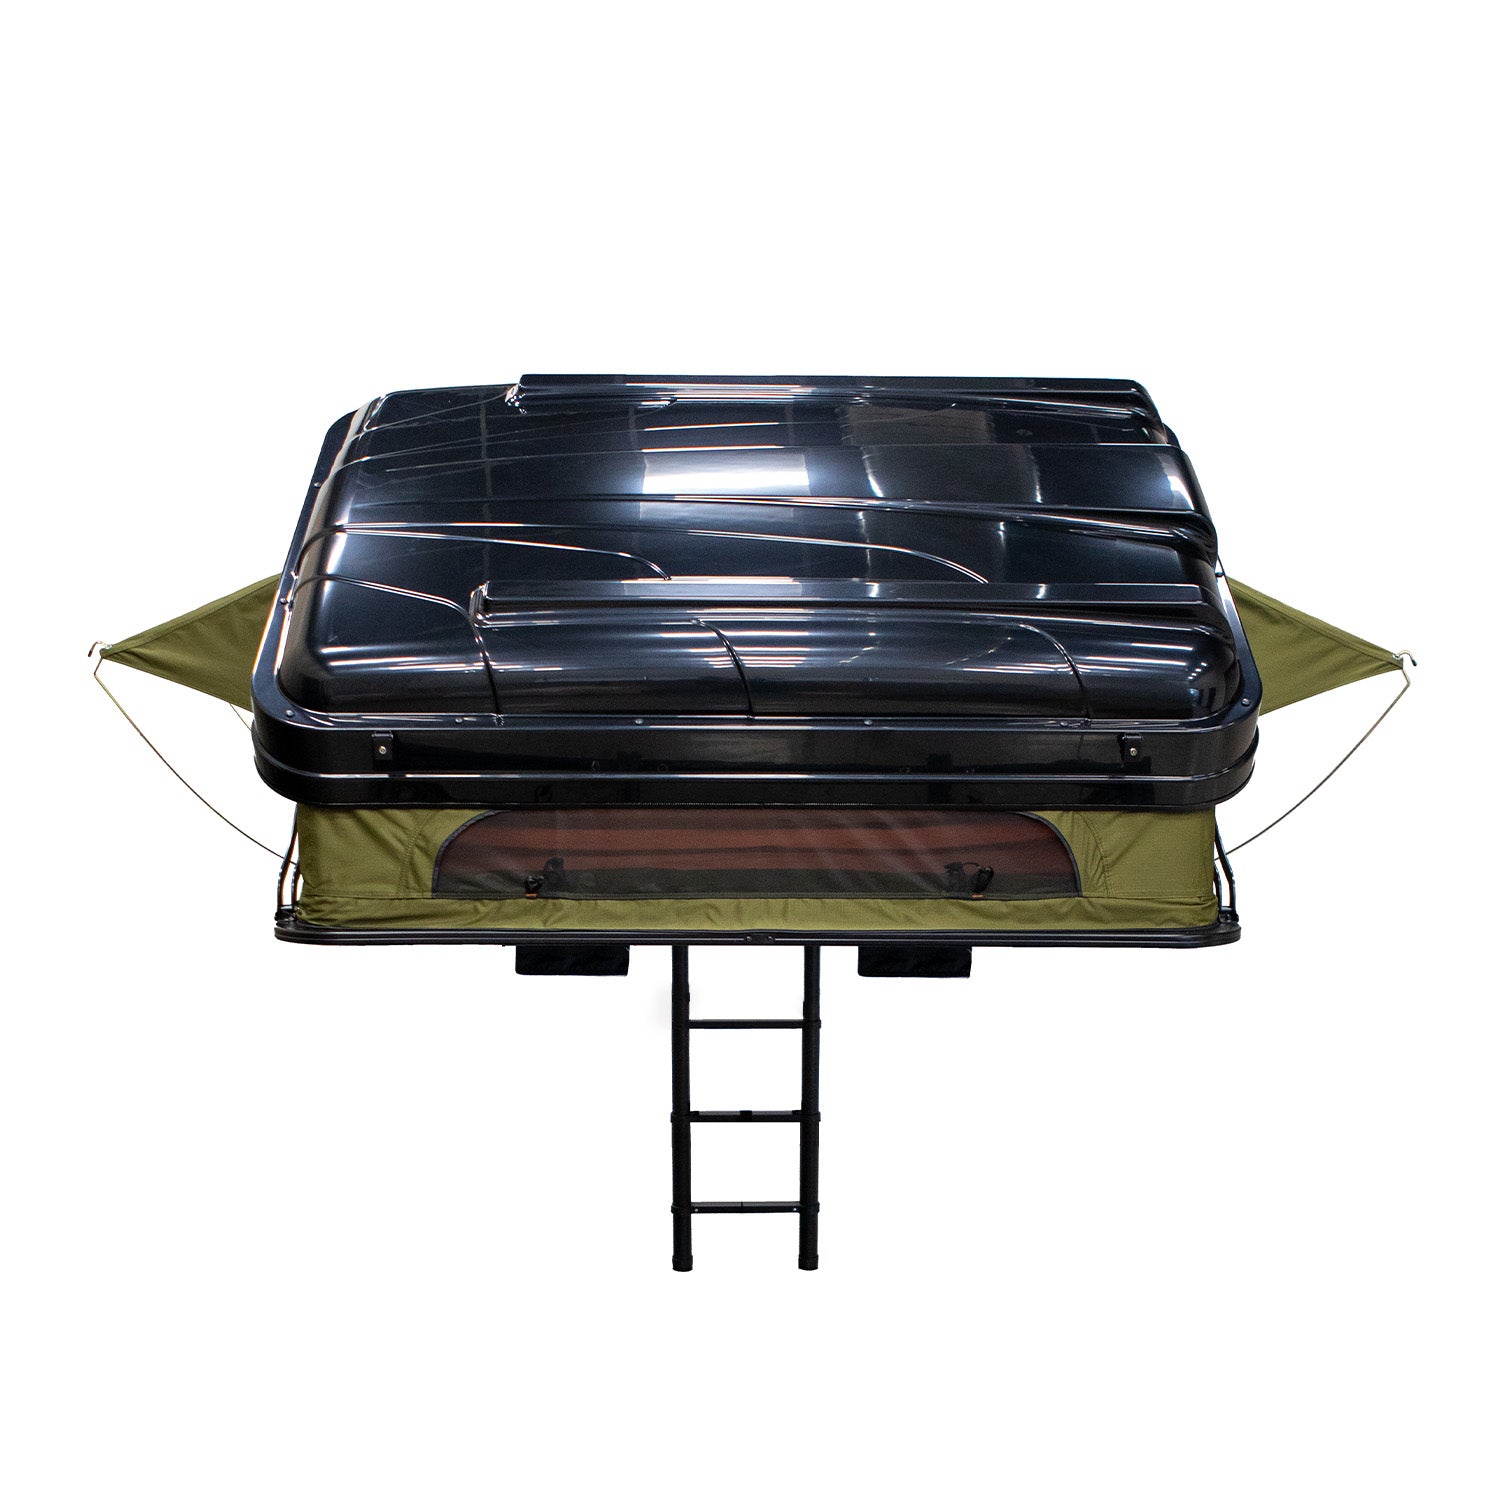 23zero-armadillo®-x2-hard-shell-roof-top-tent